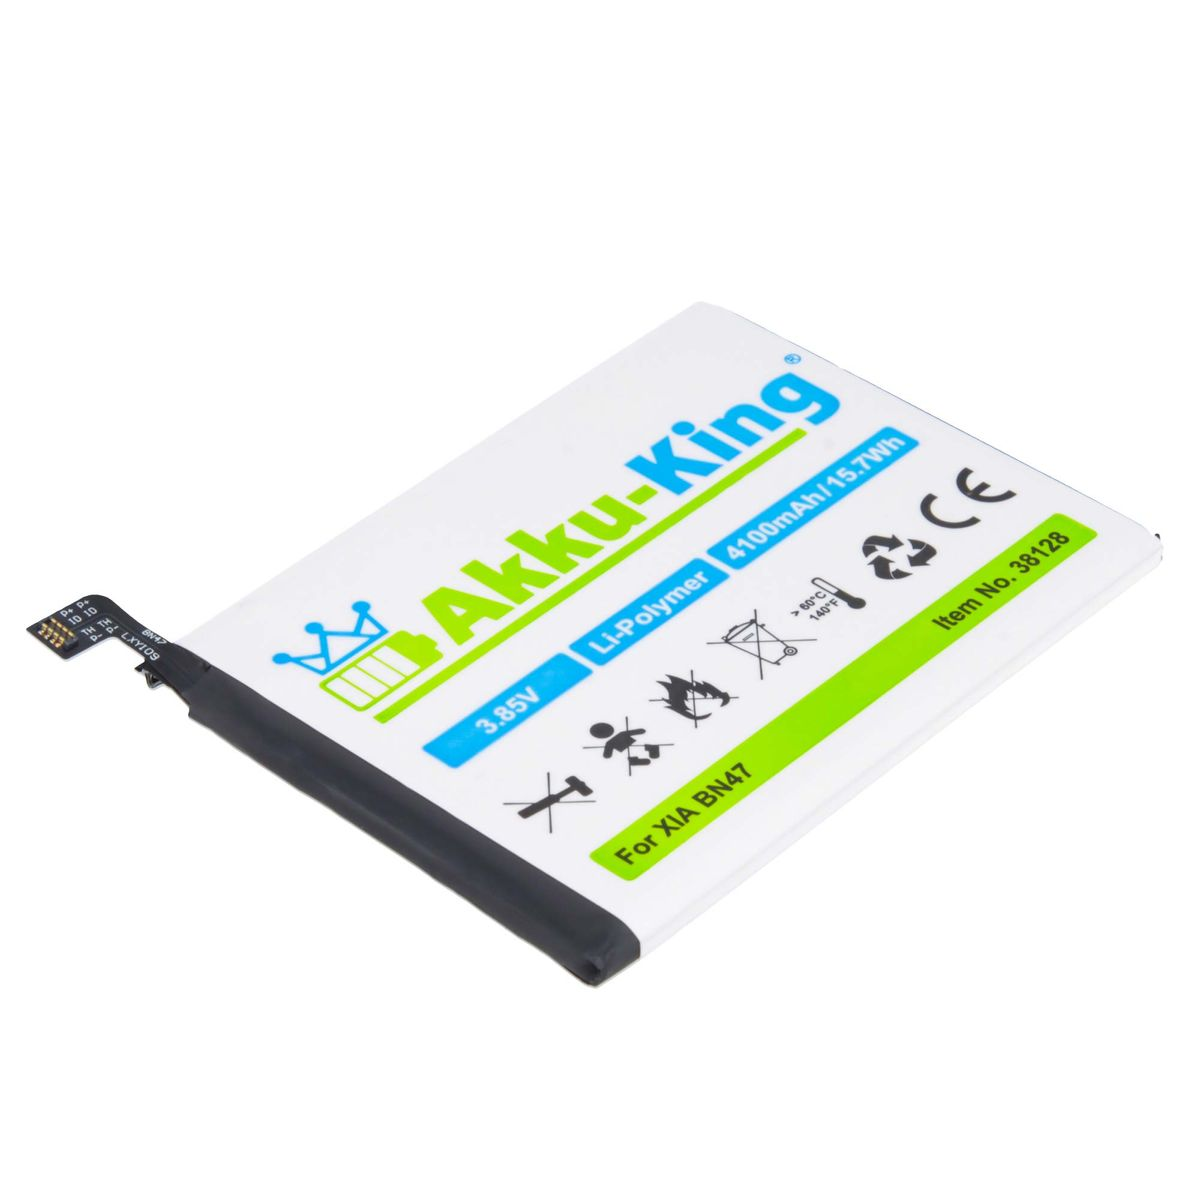 kompatibel Handy-Akku, Li-Polymer 4100mAh AKKU-KING mit Xiaomi Volt, BN47 Akku 3.85